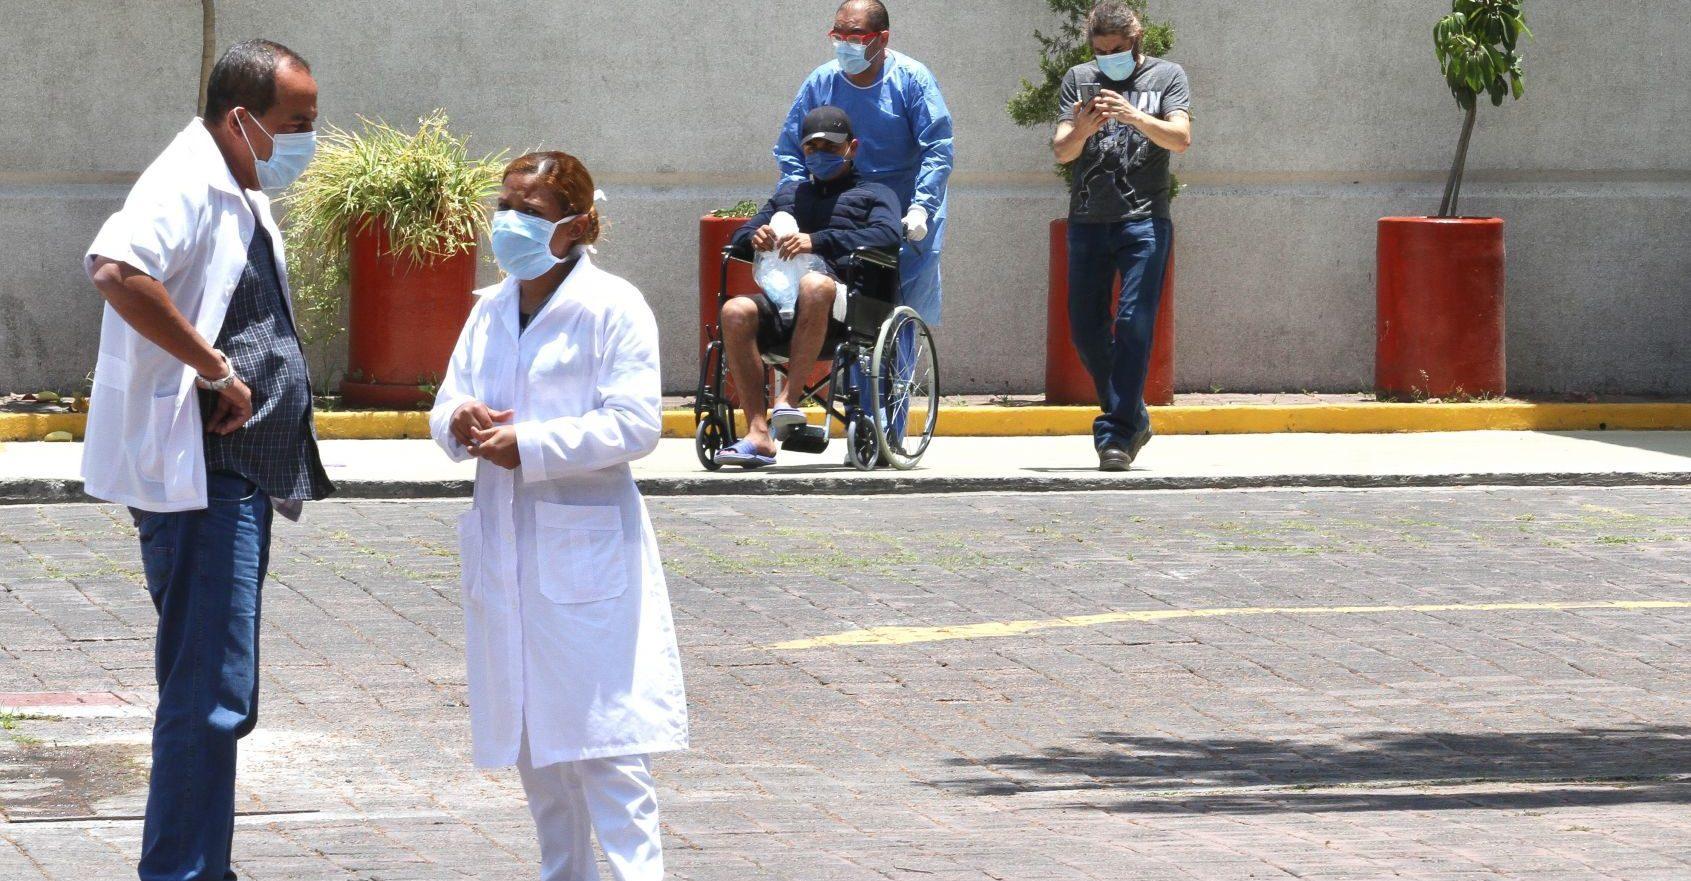 Explotación laboral y abusos, lo que sufren médicos cubanos en sus misiones por el mundo